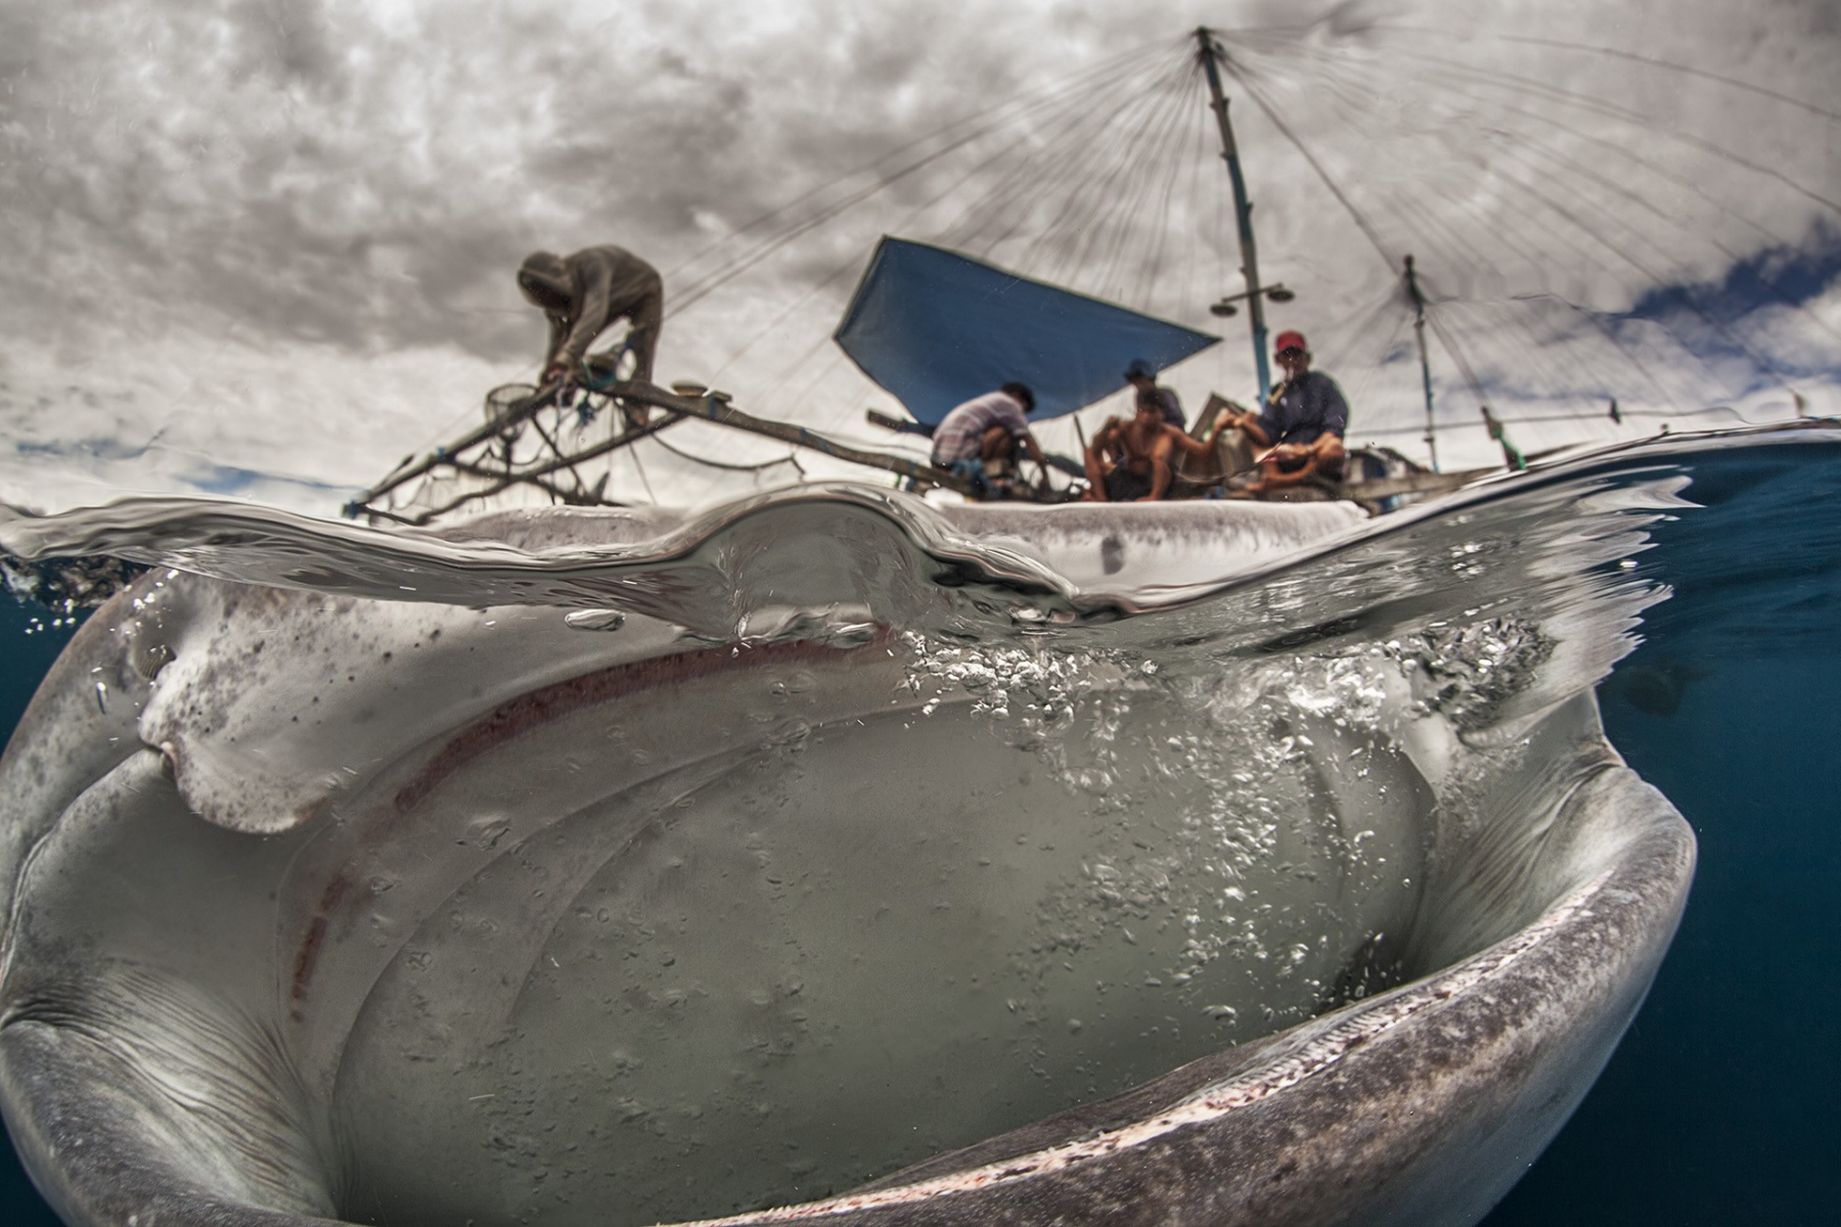 Οι ψαράδες έχουν επισκέπτη έναν... φαλαινοκαρχαρία! /Adriana Basques